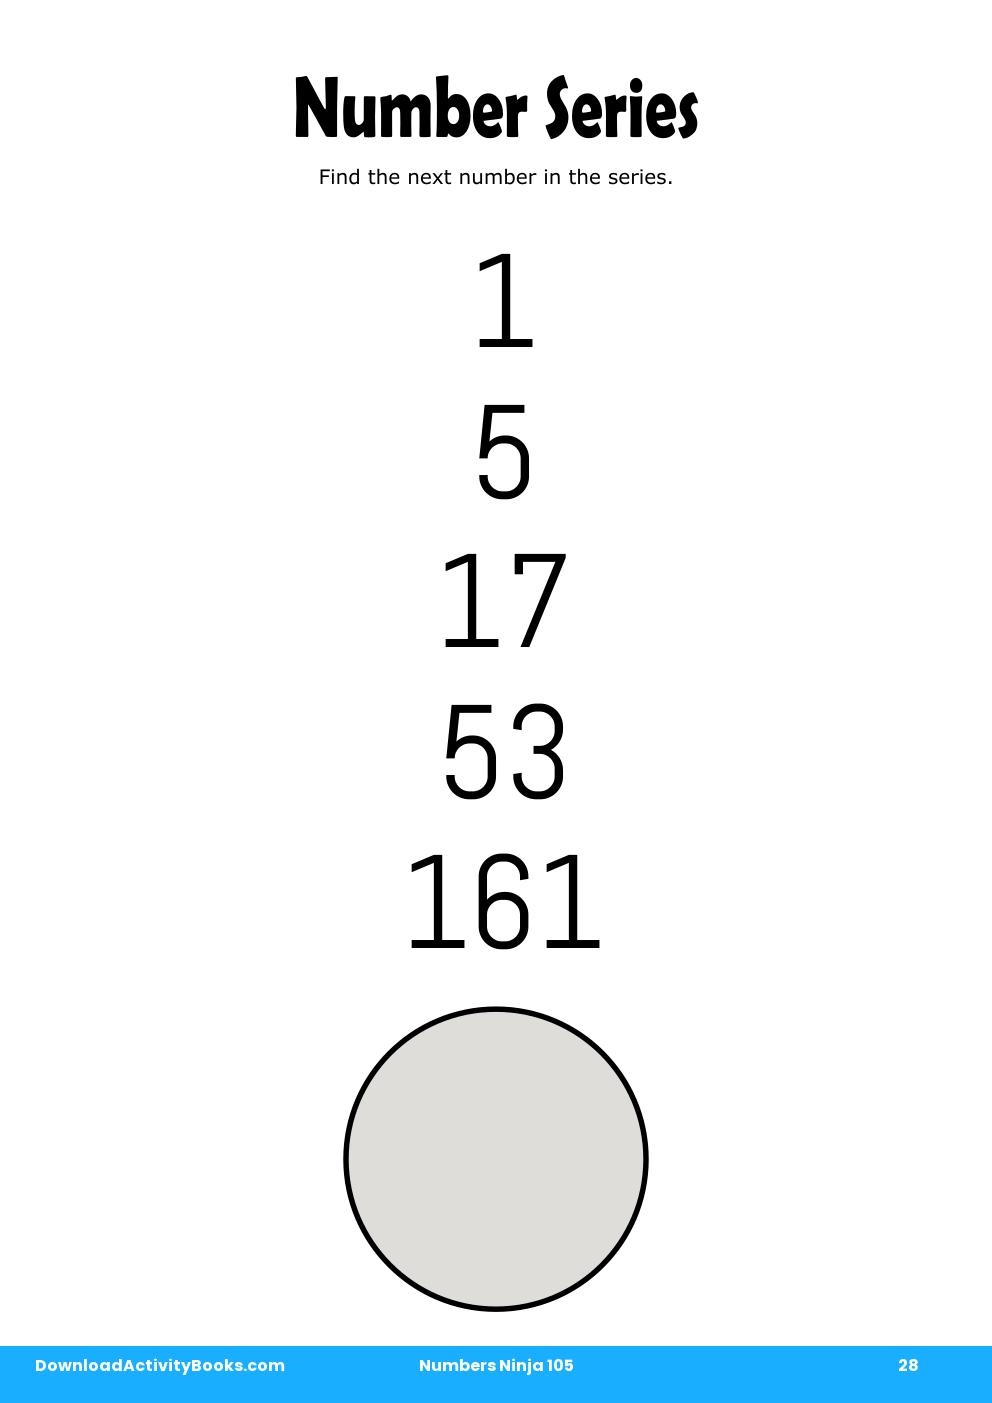 Number Series in Numbers Ninja 105